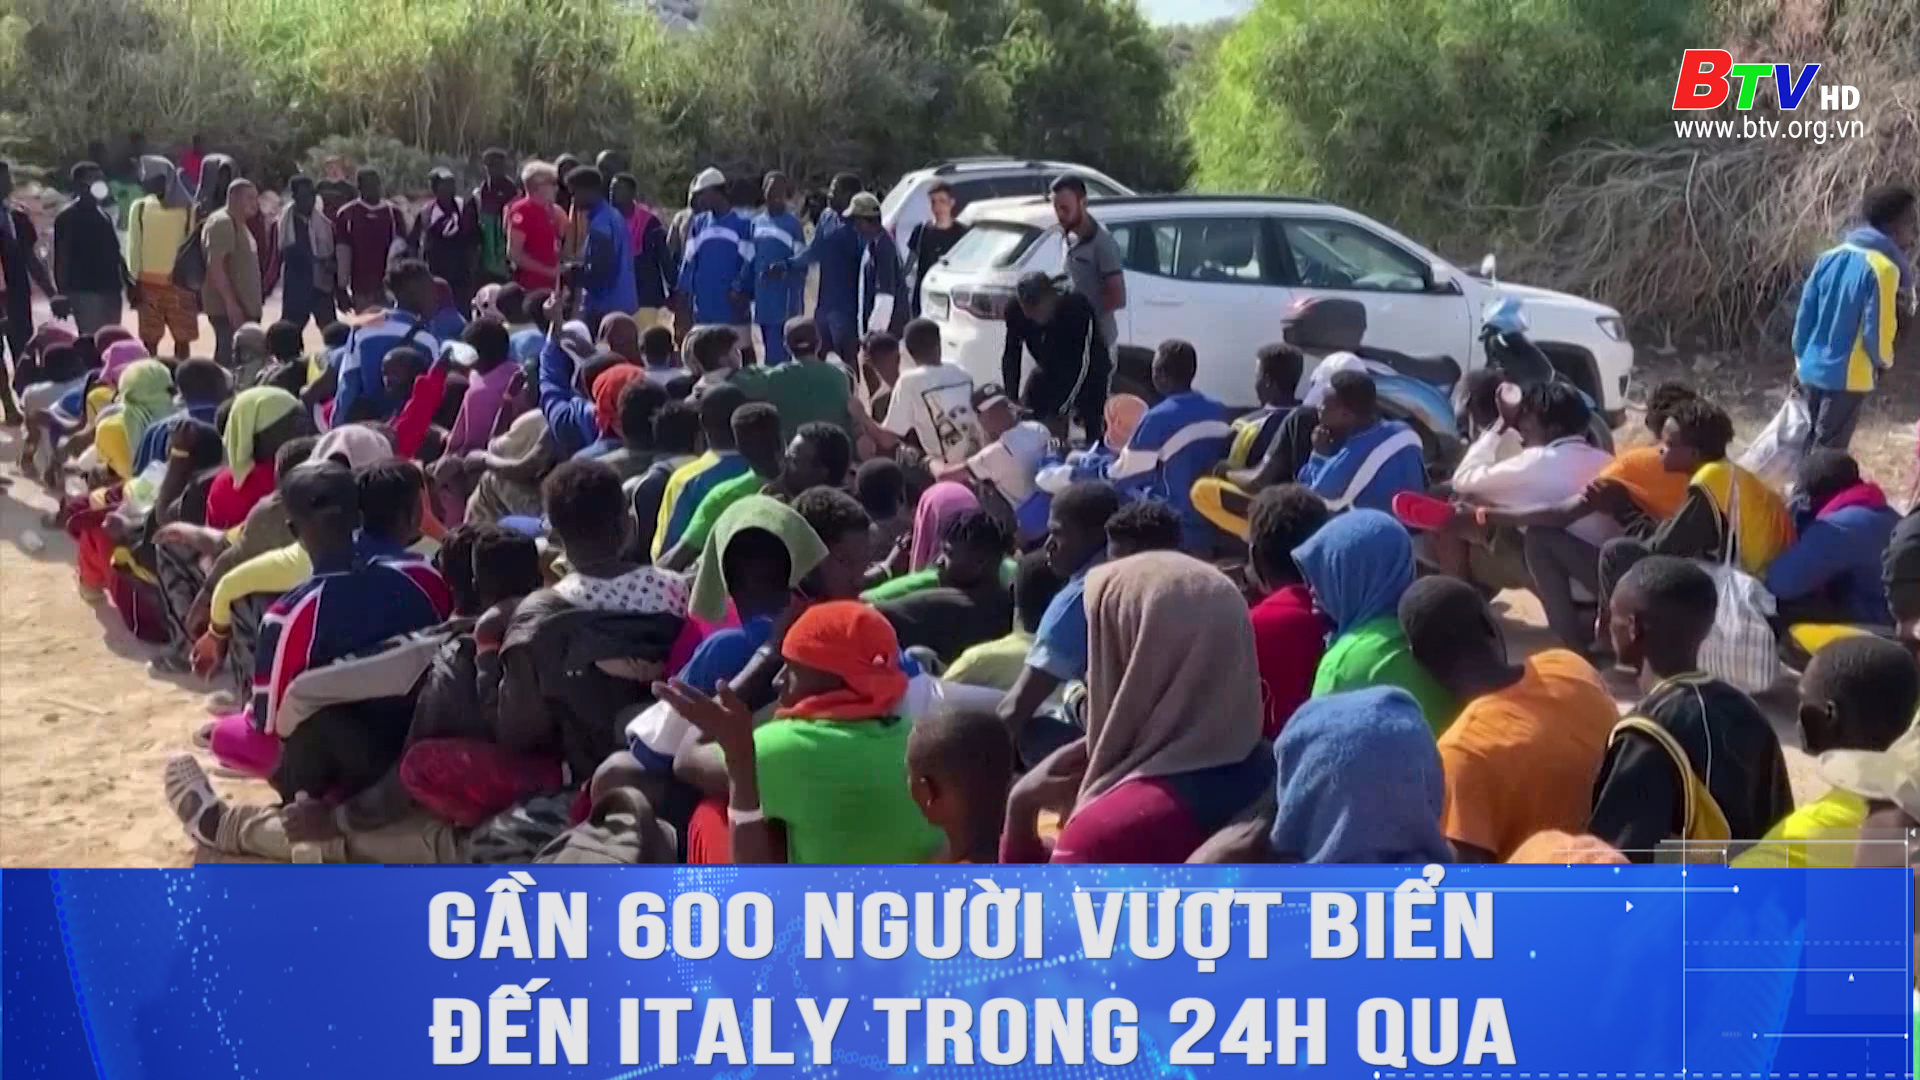 Gần 600 người vượt biển đến Italy trong 24h qua